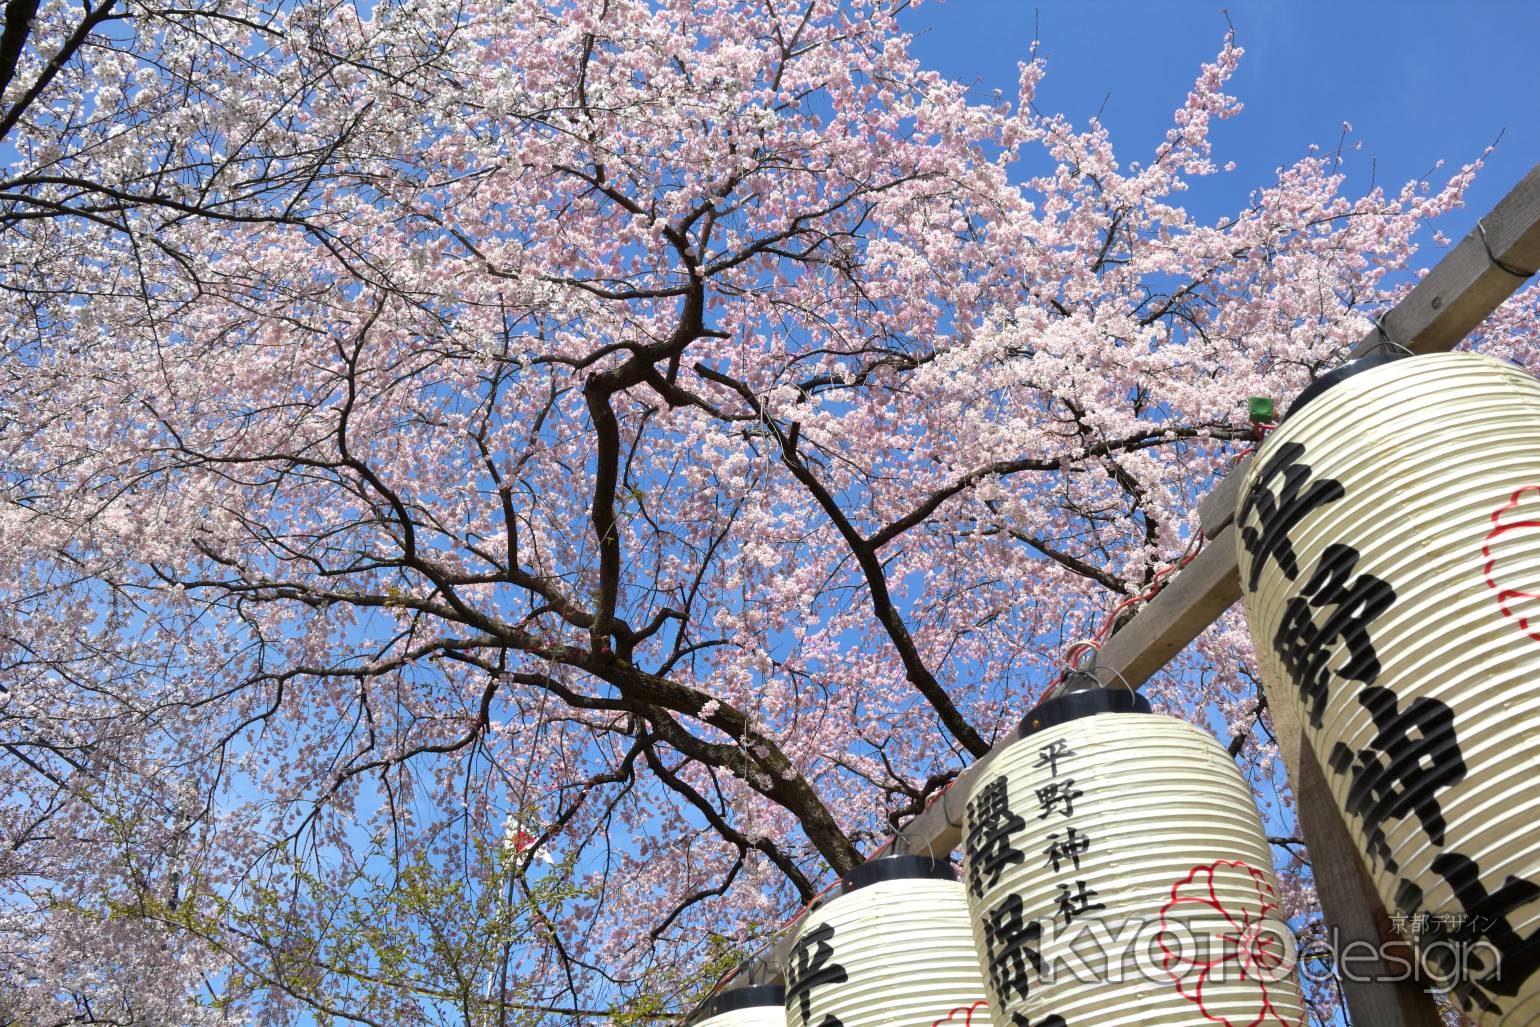 平野神社の桜3